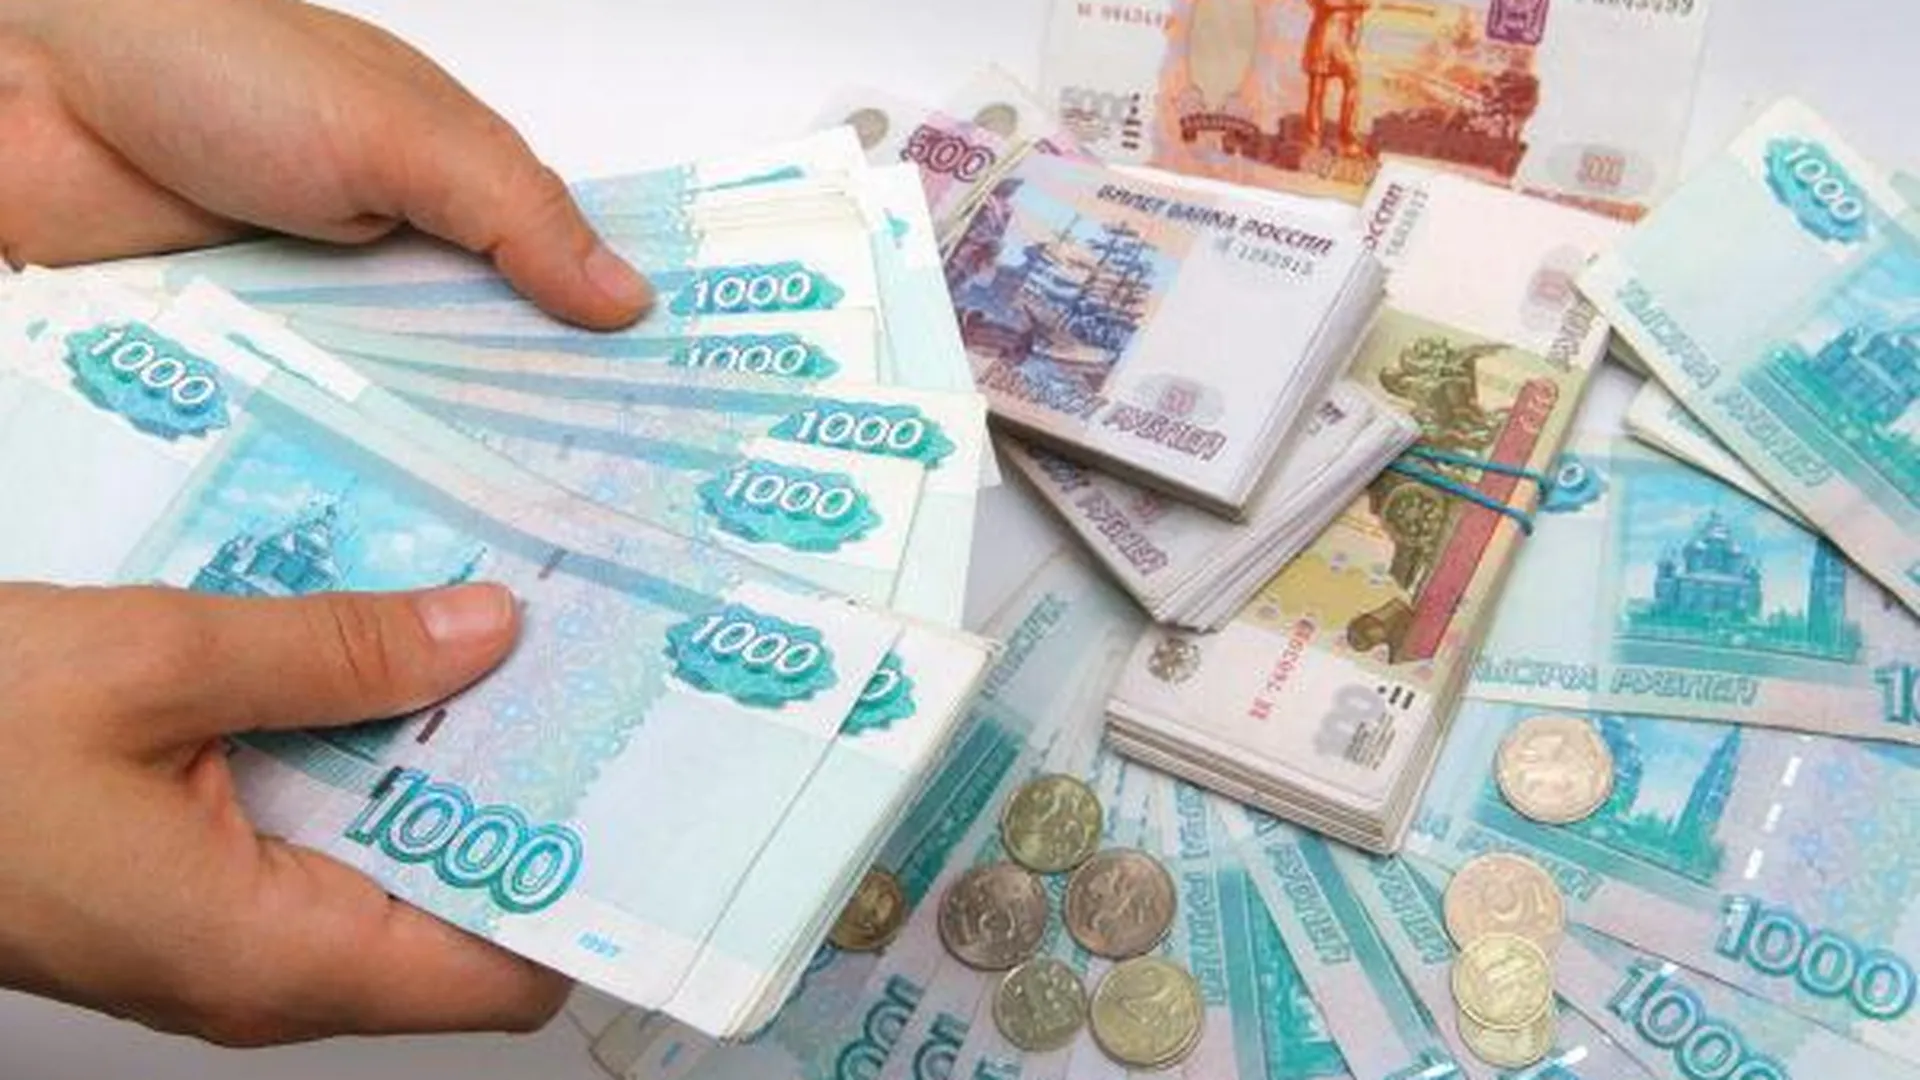 Налоговые поступления в бюджет МО в 2014 году составят 25 млрд руб